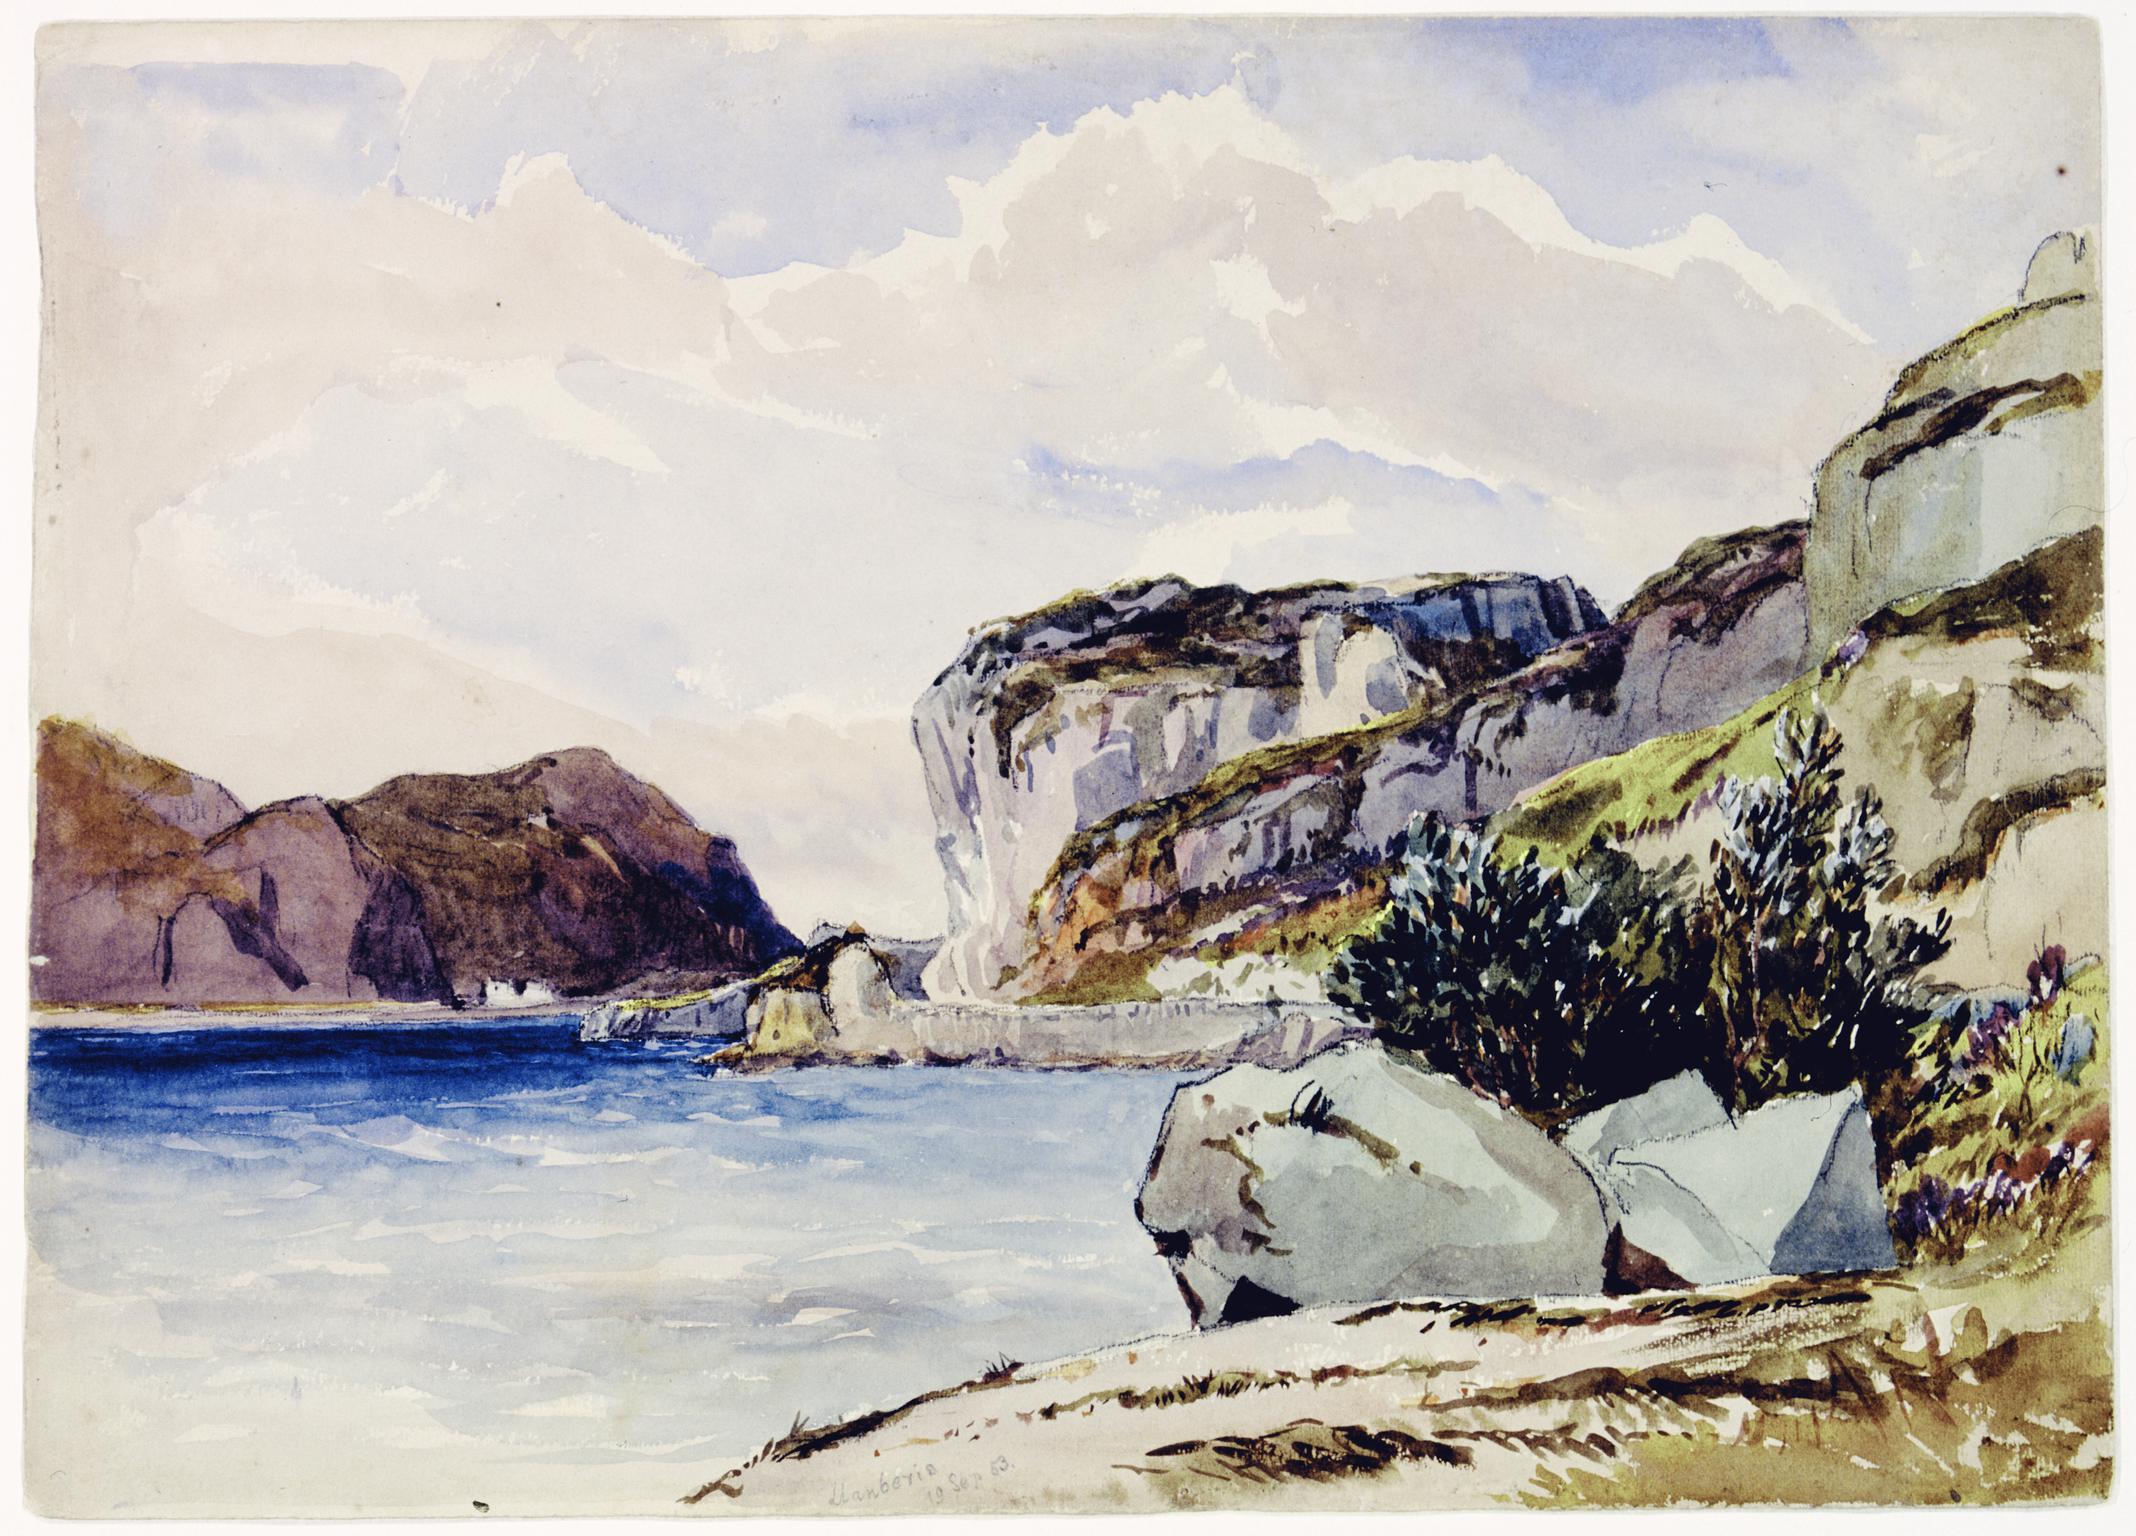 Llanberis, 19 Sep 53 (painting)